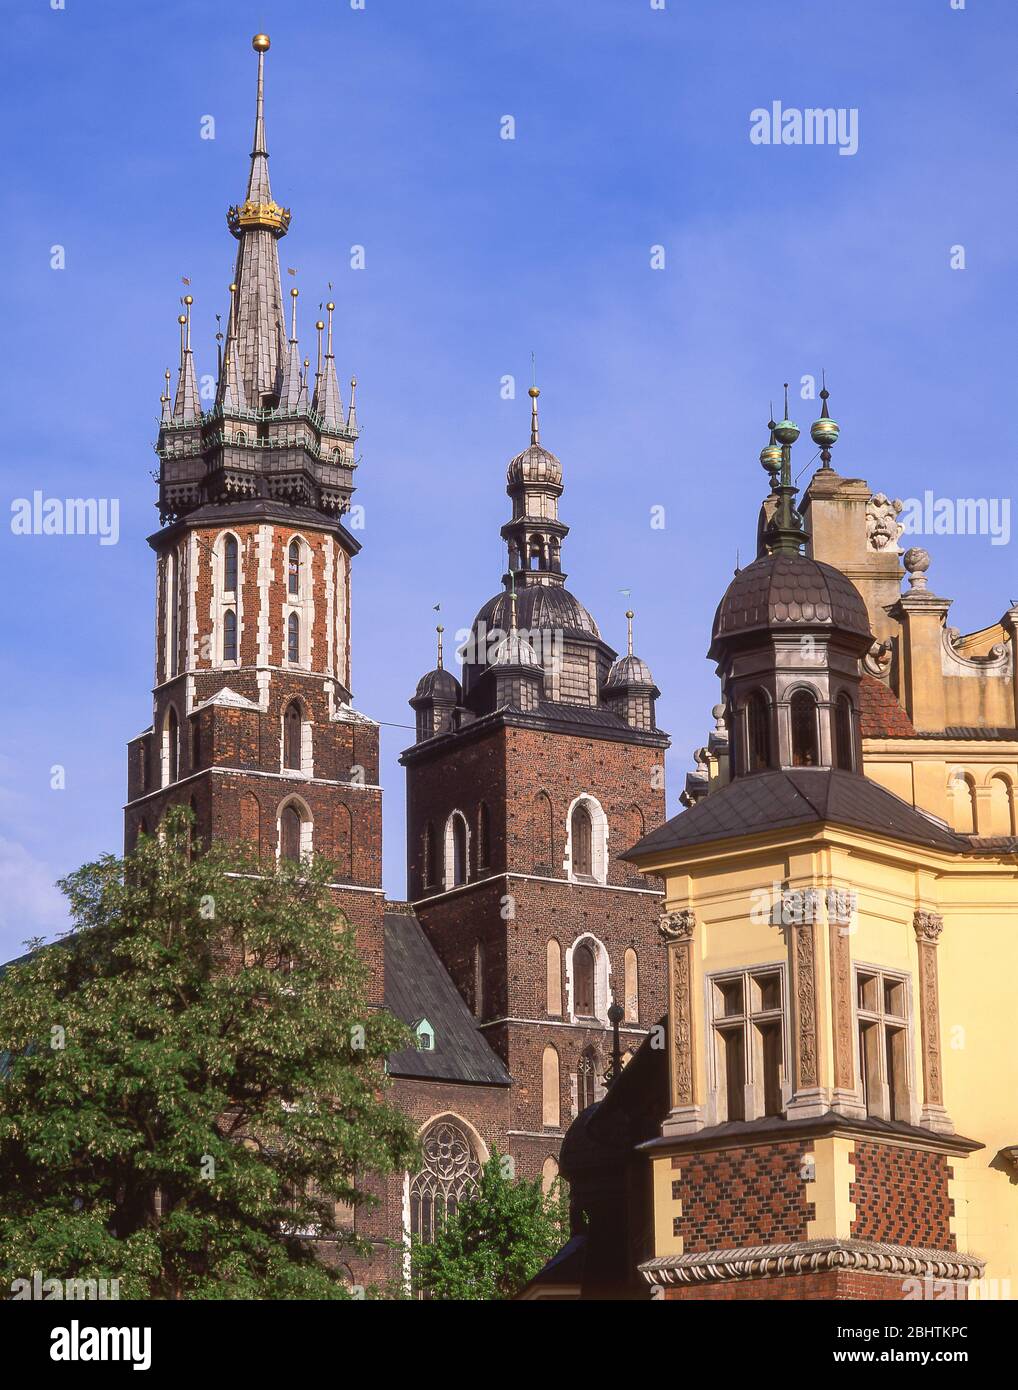 Basílica de Santa María y el cloth Hall de Cracovia, Plaza del mercado, Casco antiguo, Cracovia (Cracovia), República de Polonia Foto de stock